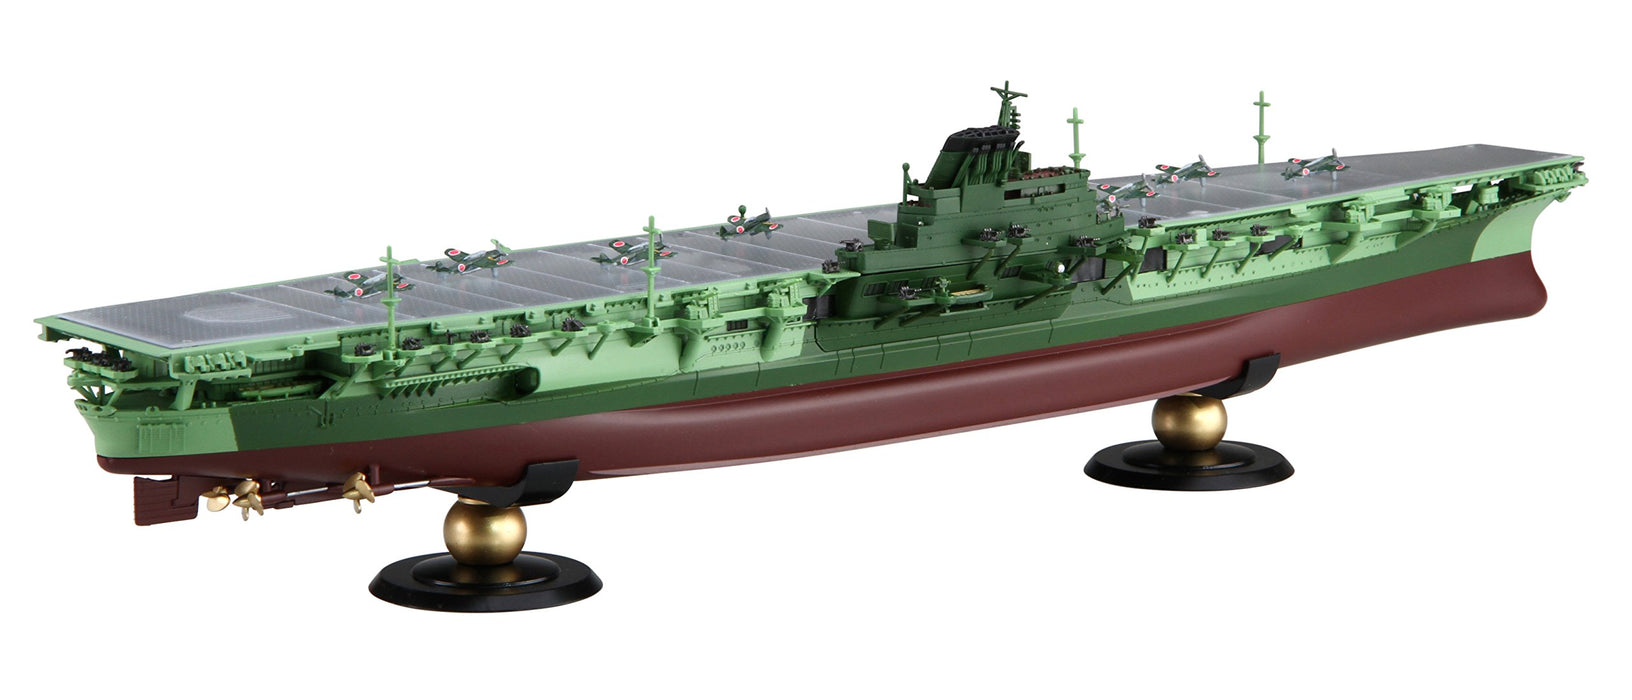 Modèle Fujimi 1/700 Ship Next Series No.10Ex-1 Porte-avions de la marine japonaise Shinano (Version transparente) Modèle de navire en plastique à code couleur Nx10Ex-1